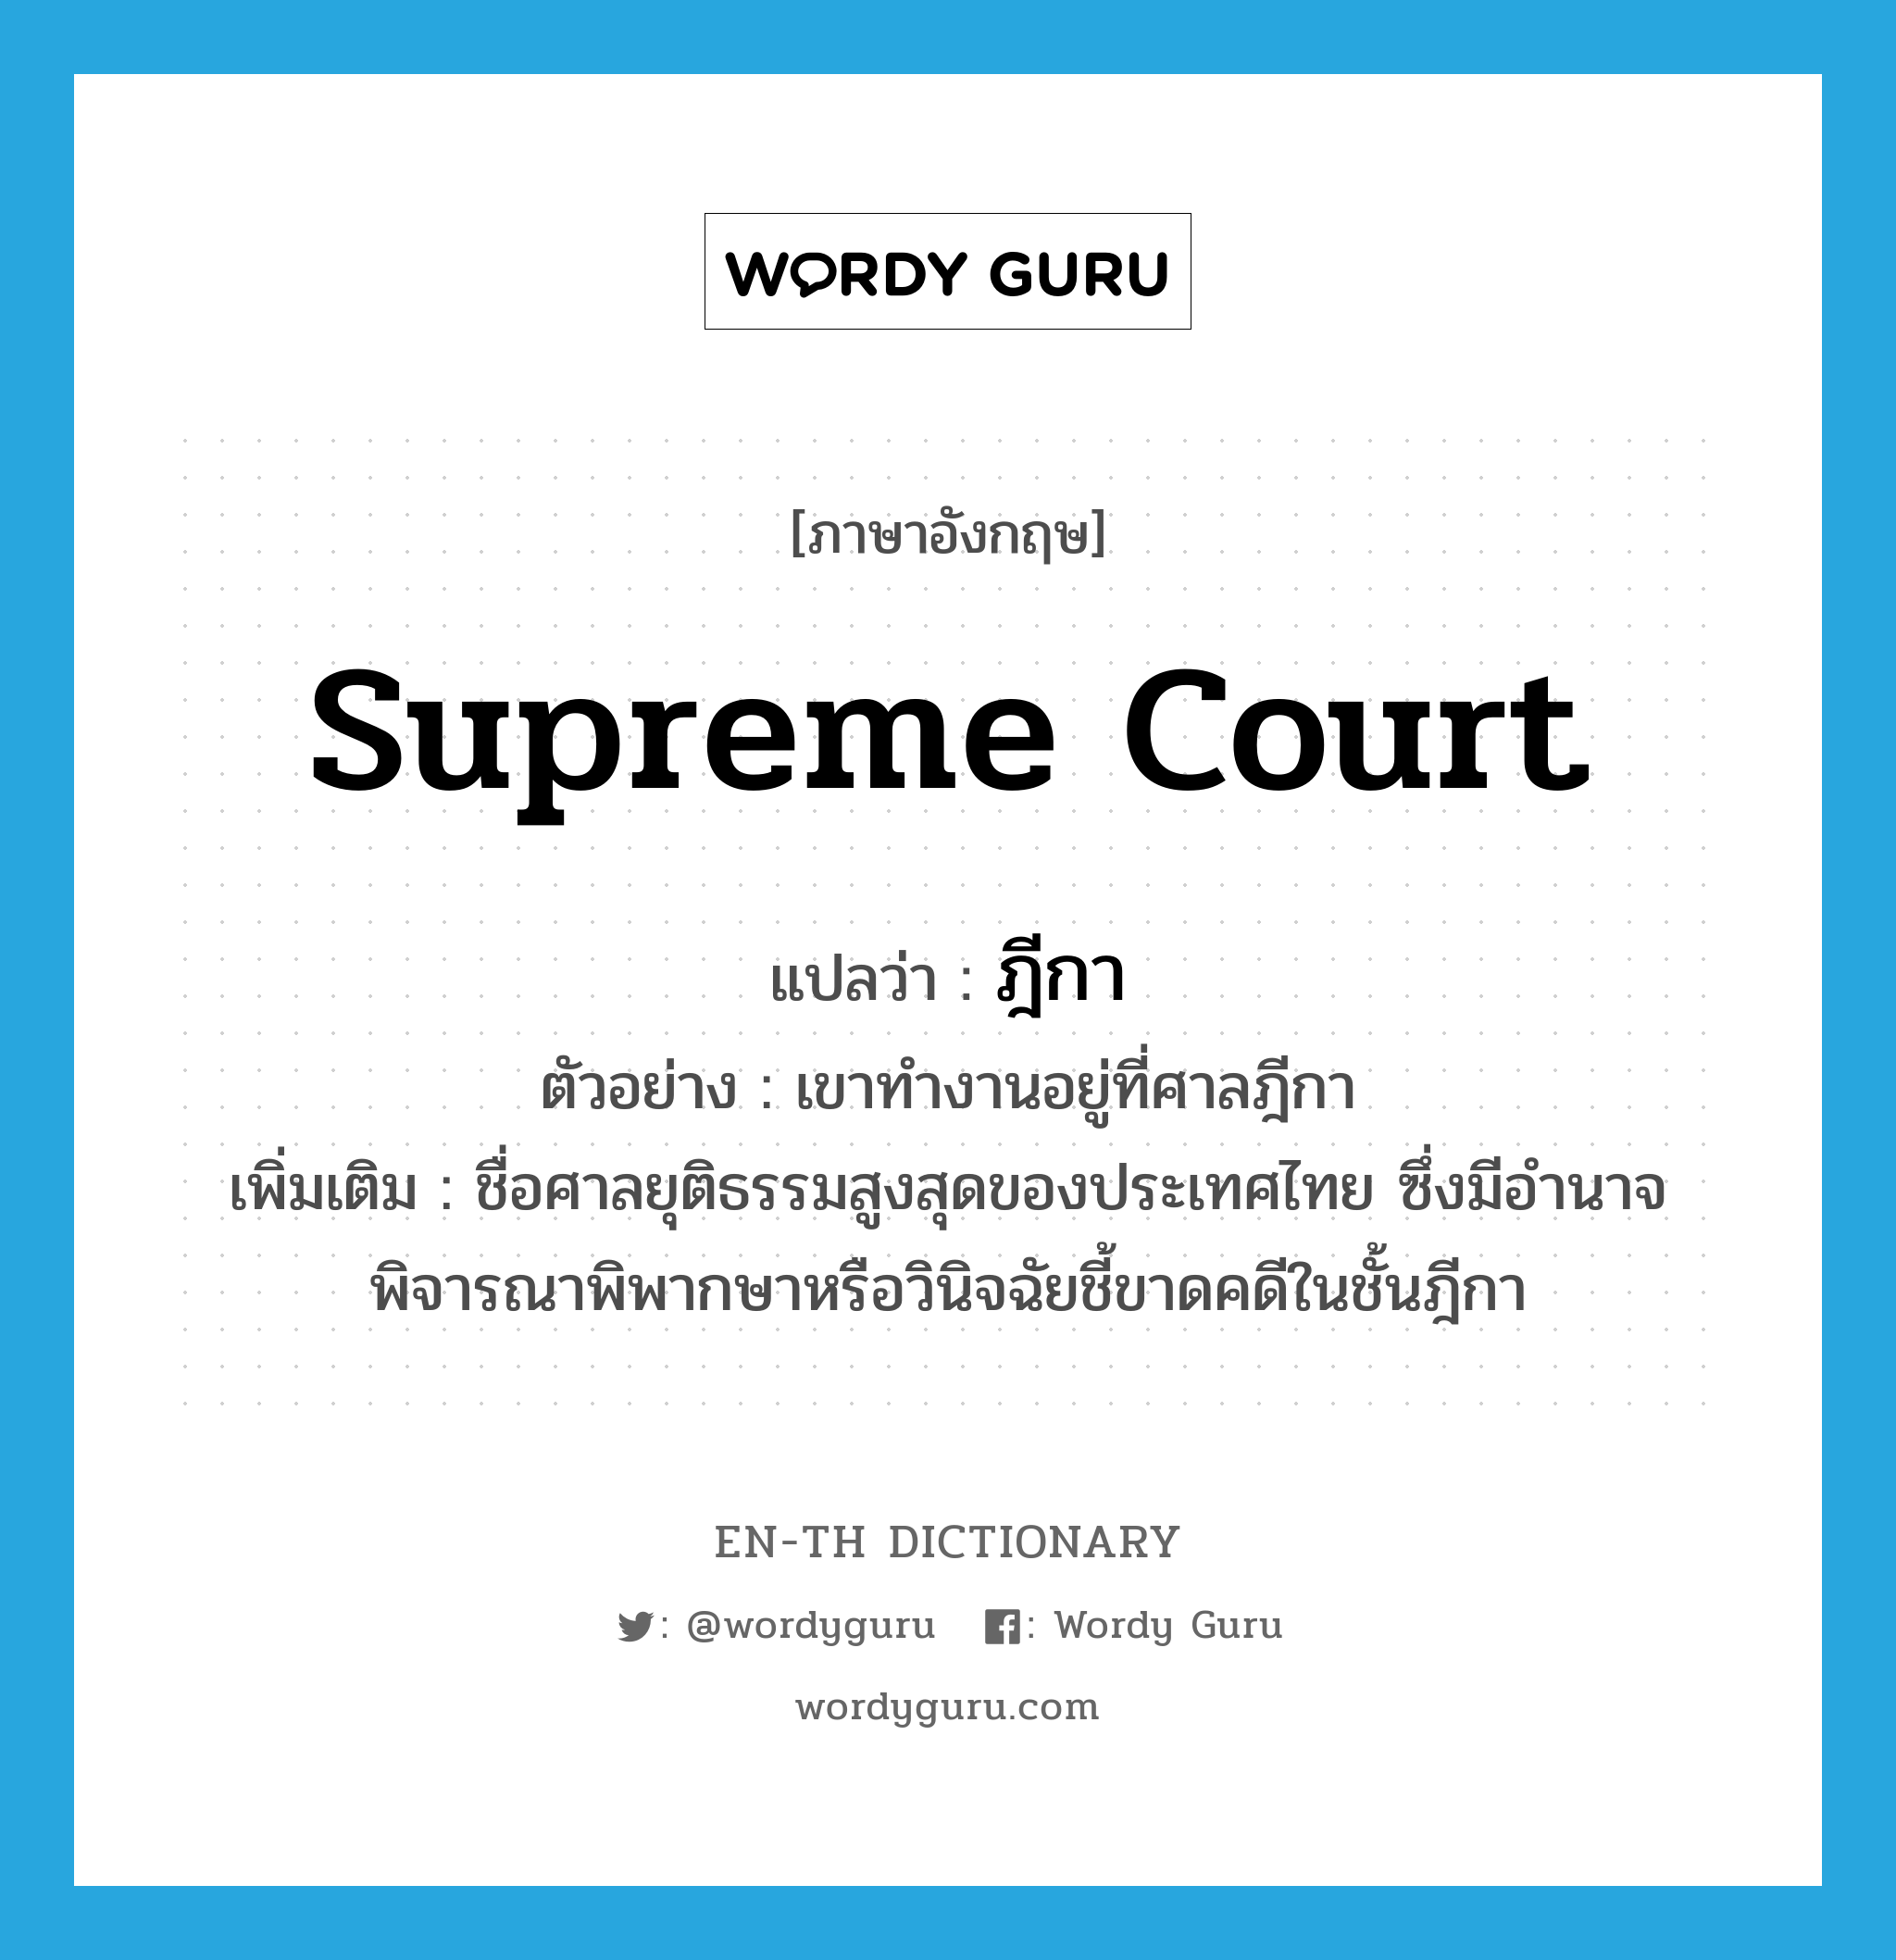 ฎีกา ภาษาอังกฤษ?, คำศัพท์ภาษาอังกฤษ ฎีกา แปลว่า Supreme Court ประเภท N ตัวอย่าง เขาทำงานอยู่ที่ศาลฎีกา เพิ่มเติม ชื่อศาลยุติธรรมสูงสุดของประเทศไทย ซึ่งมีอำนาจพิจารณาพิพากษาหรือวินิจฉัยชี้ขาดคดีในชั้นฎีกา หมวด N